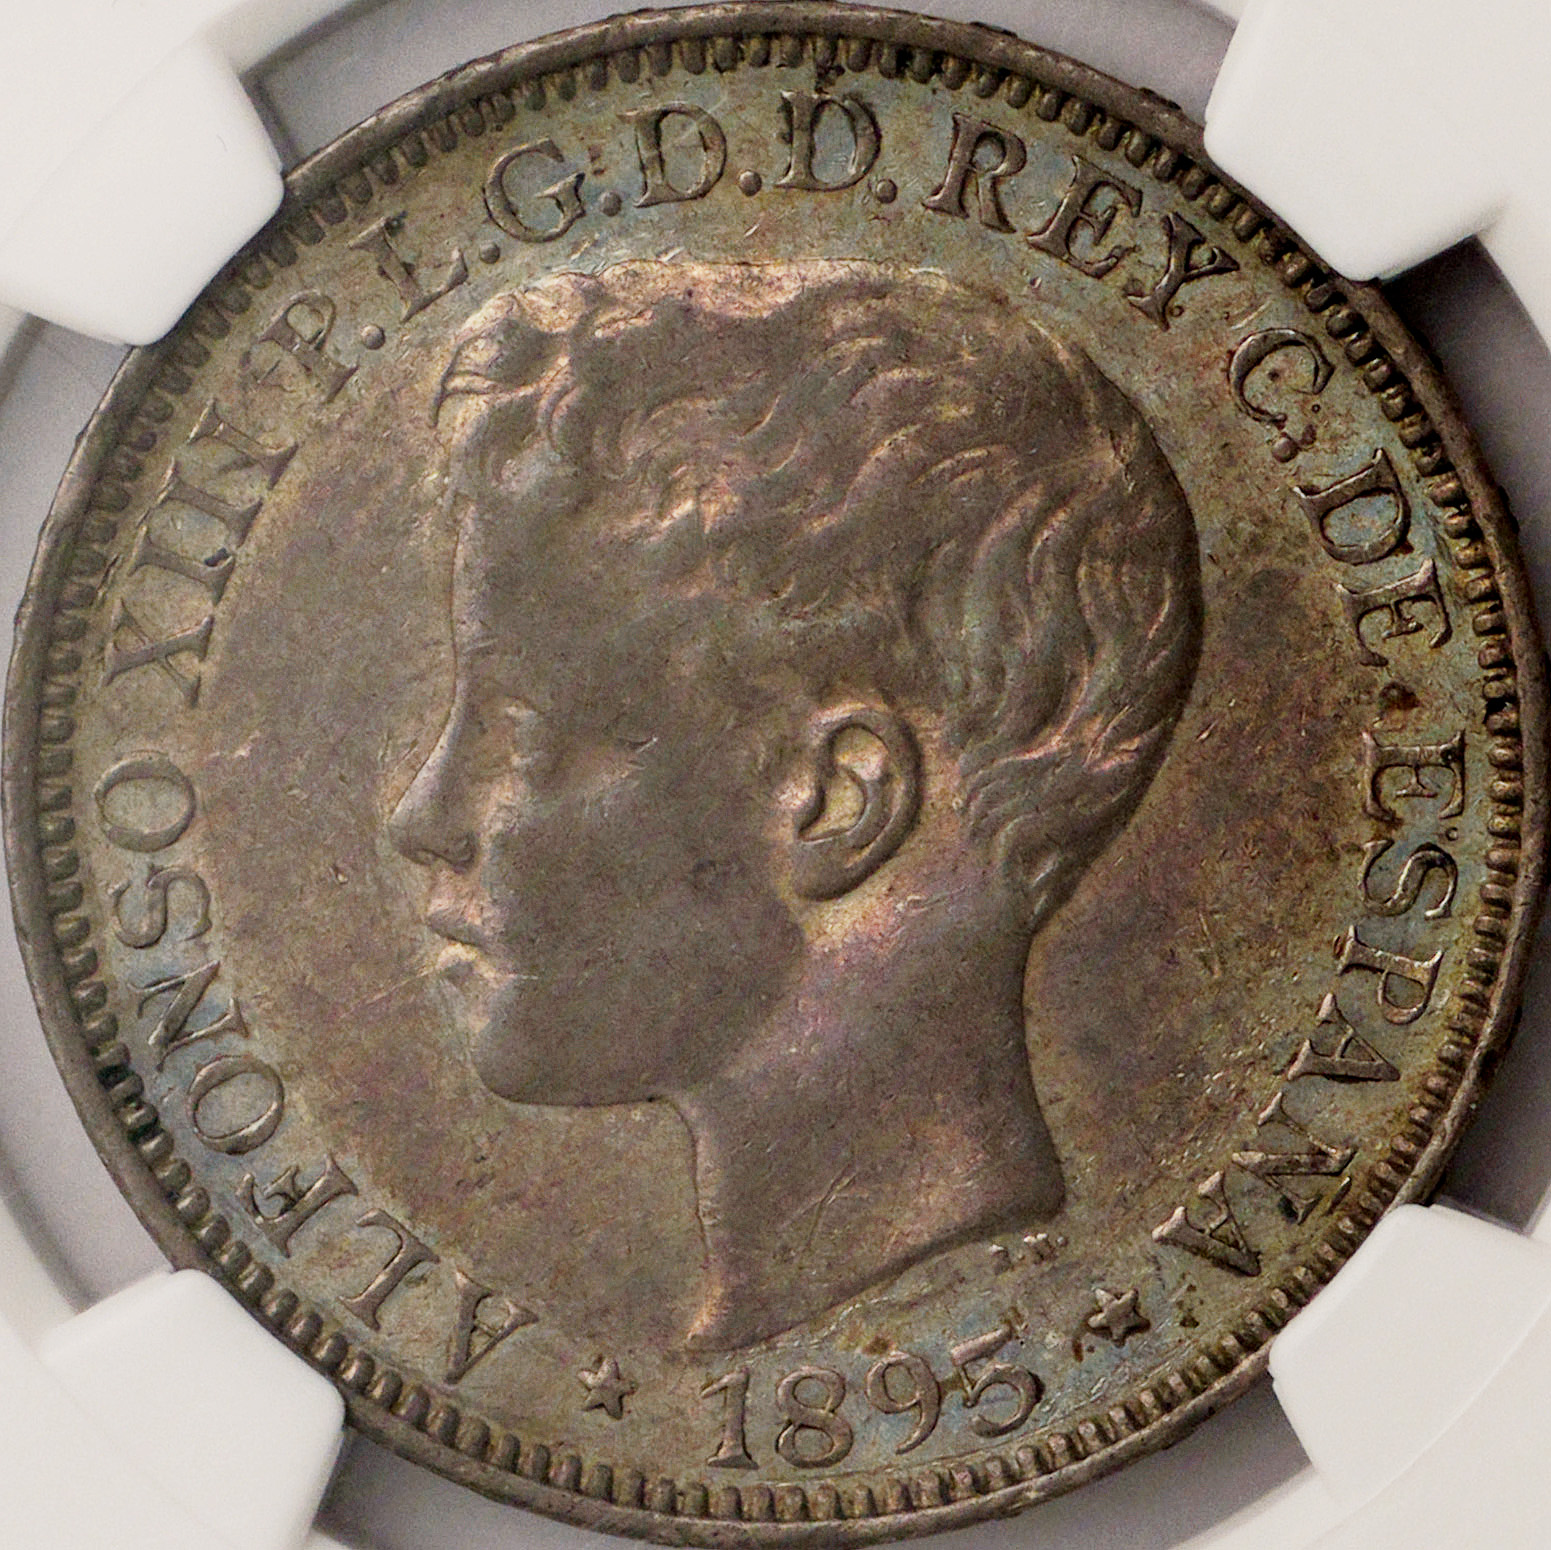 プエルトリコ (Puerto Rico) アルフォンソ13世像 1ペソ銀貨 1895